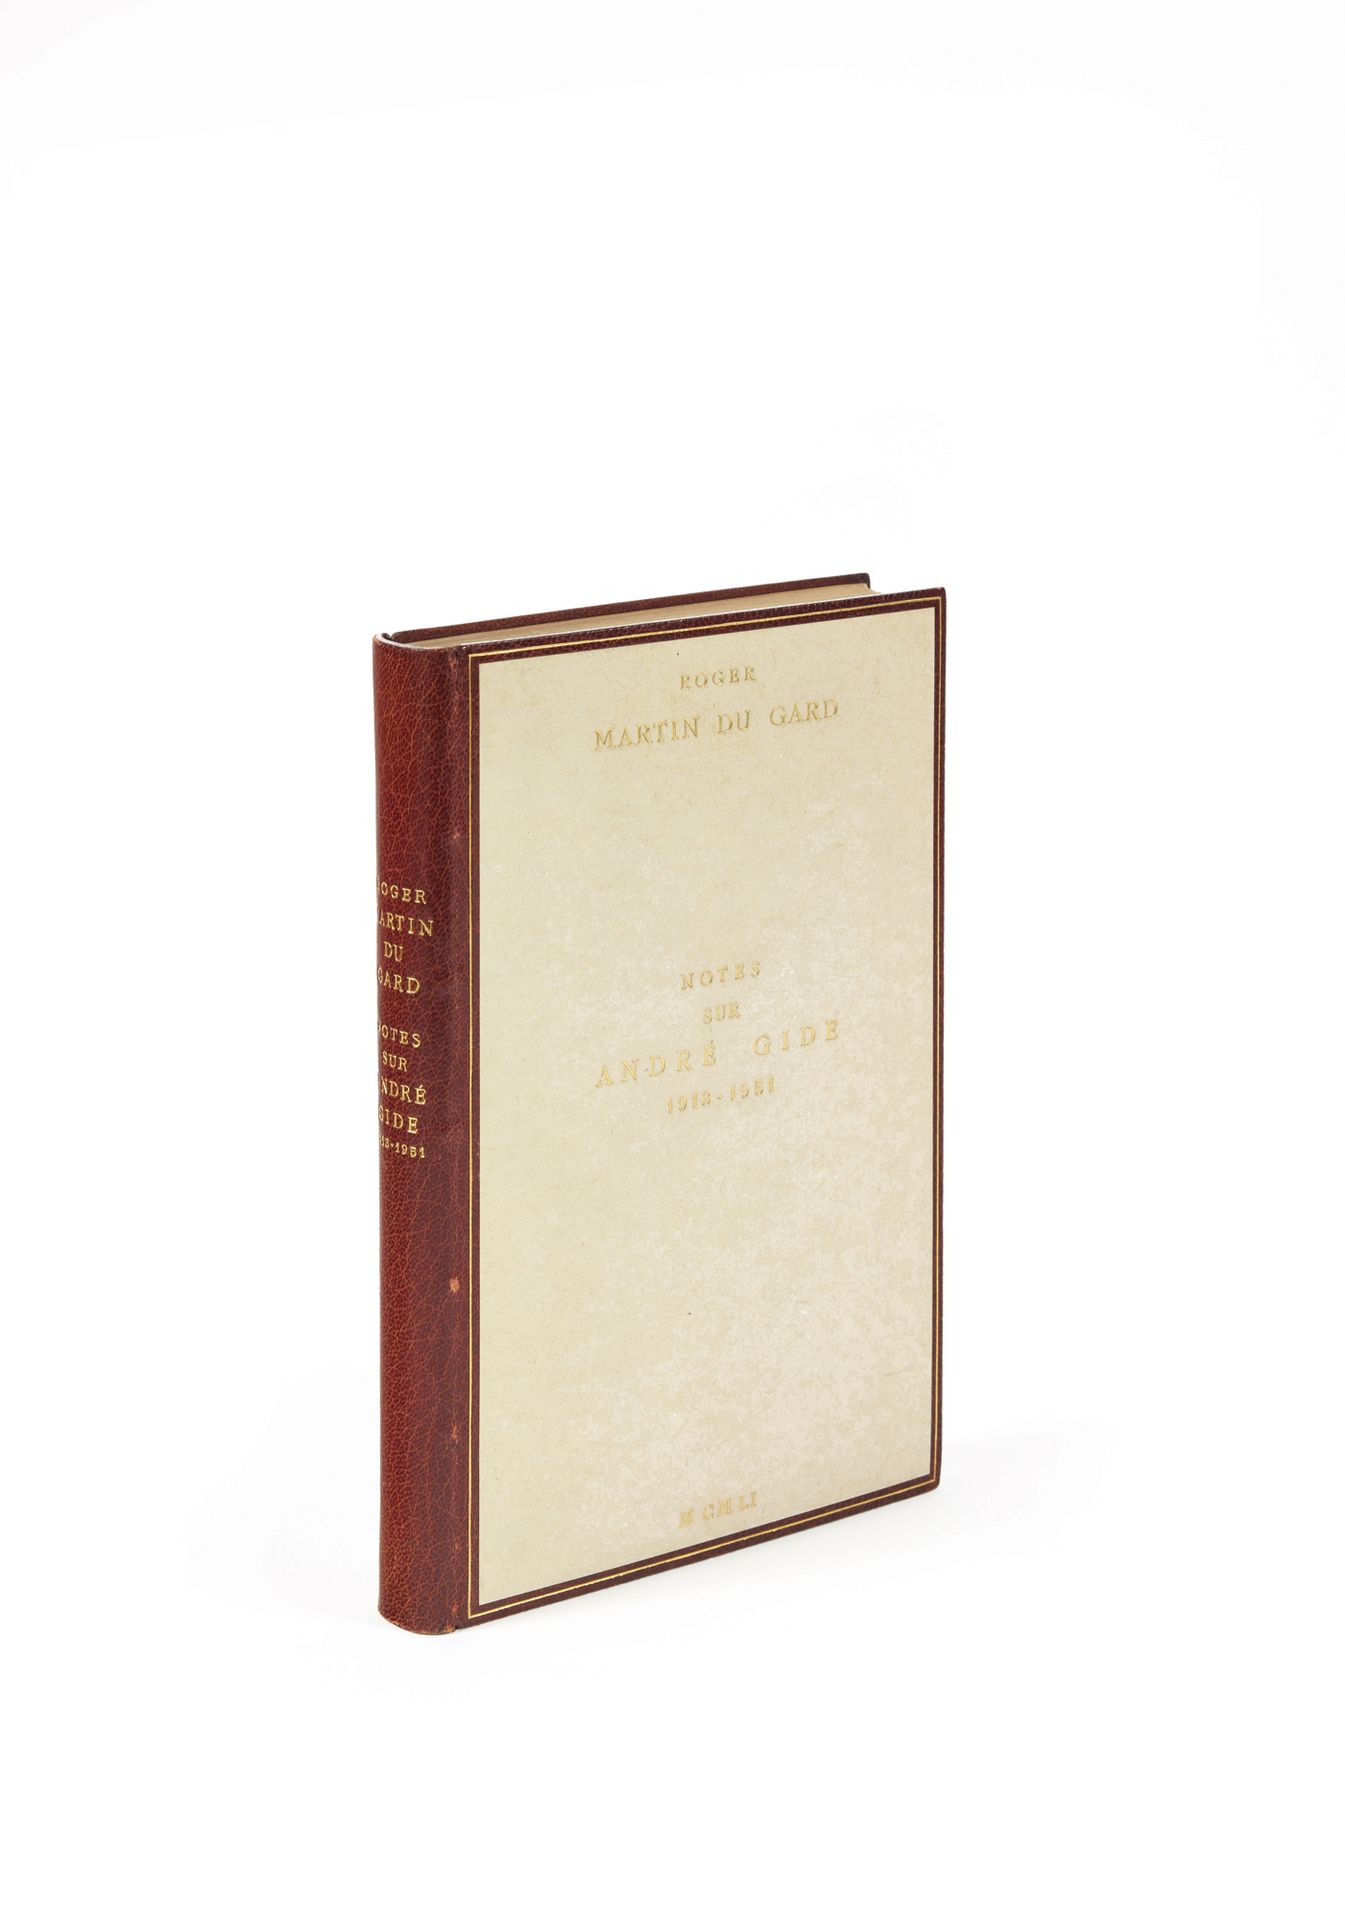 Martin du Gard, Roger Notizen zu André Gide 1913-1951. Paris, Gallimard, 1951; i&hellip;